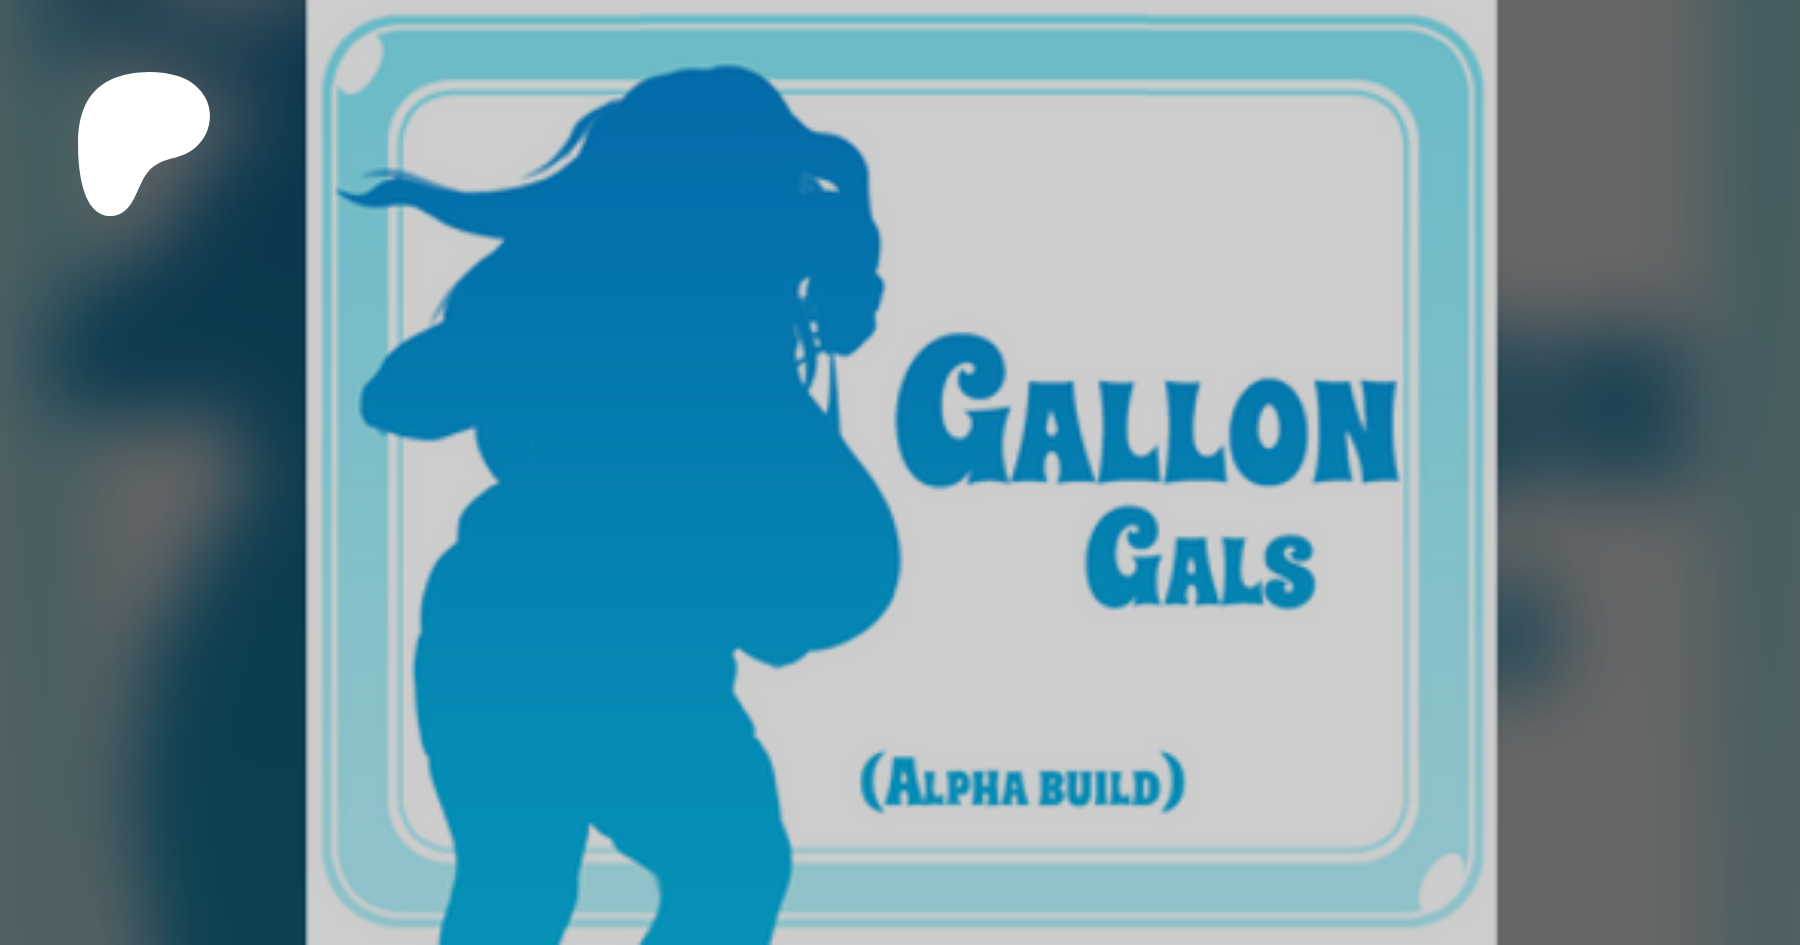 Gallon gals